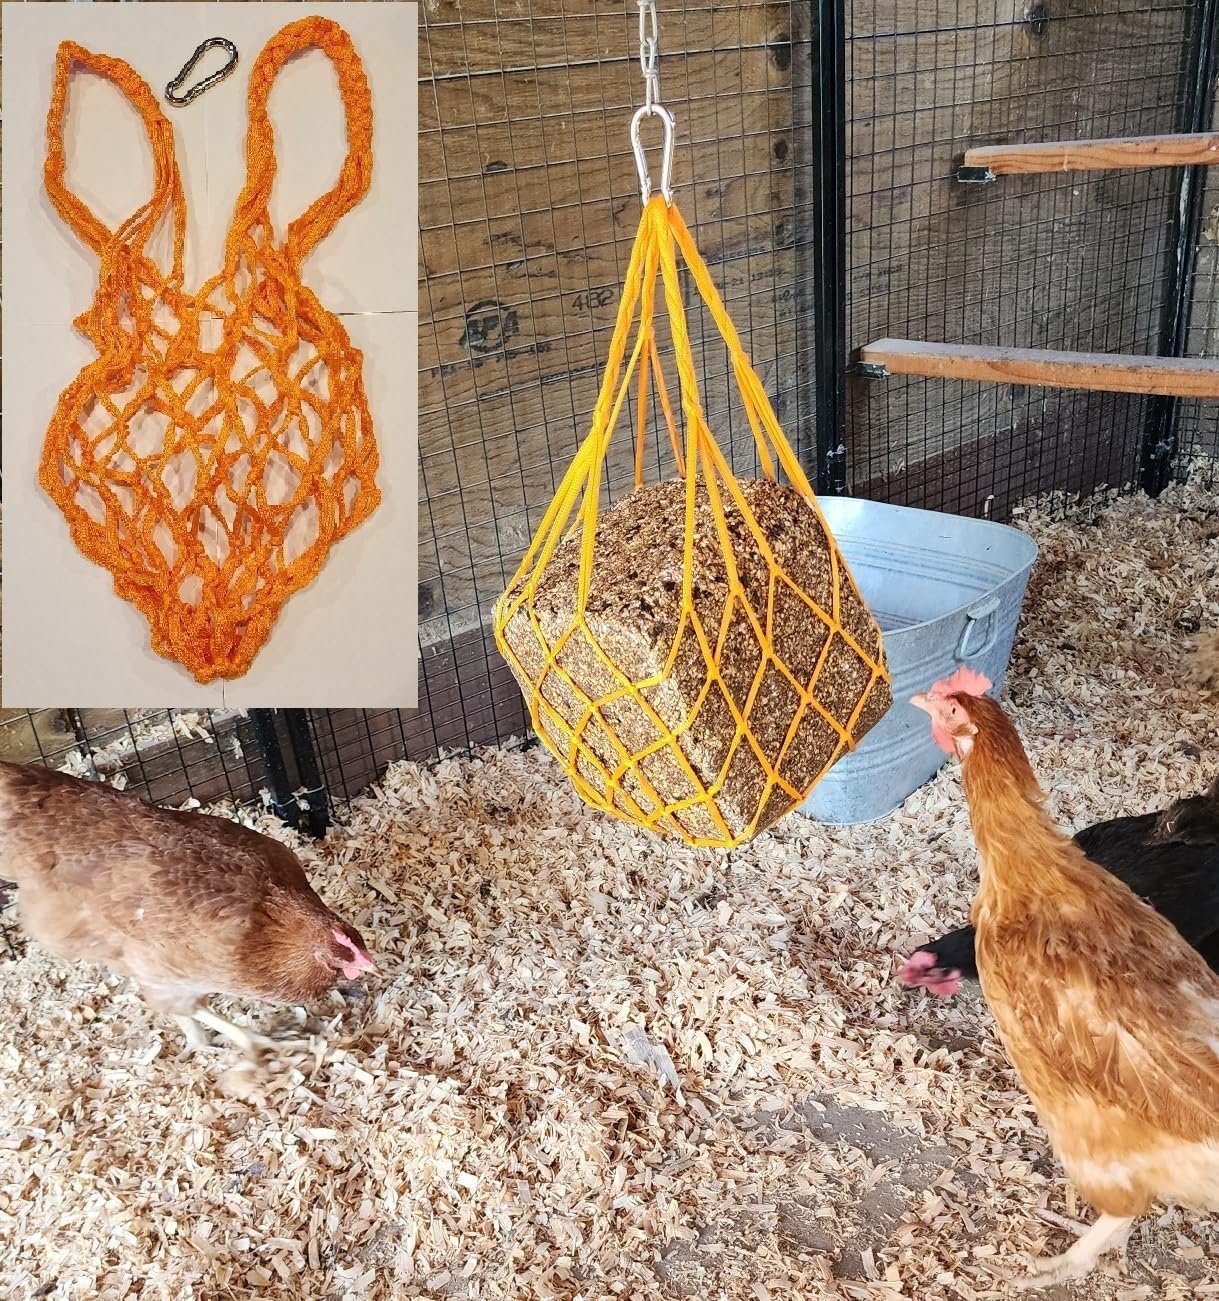 Muzzys Orange Chicken Coop Flock Block Bird Seed Hanging Bag Veggie Treat Holder - Poultry Feeder Toy Accessories Cabbage Bowl Sack